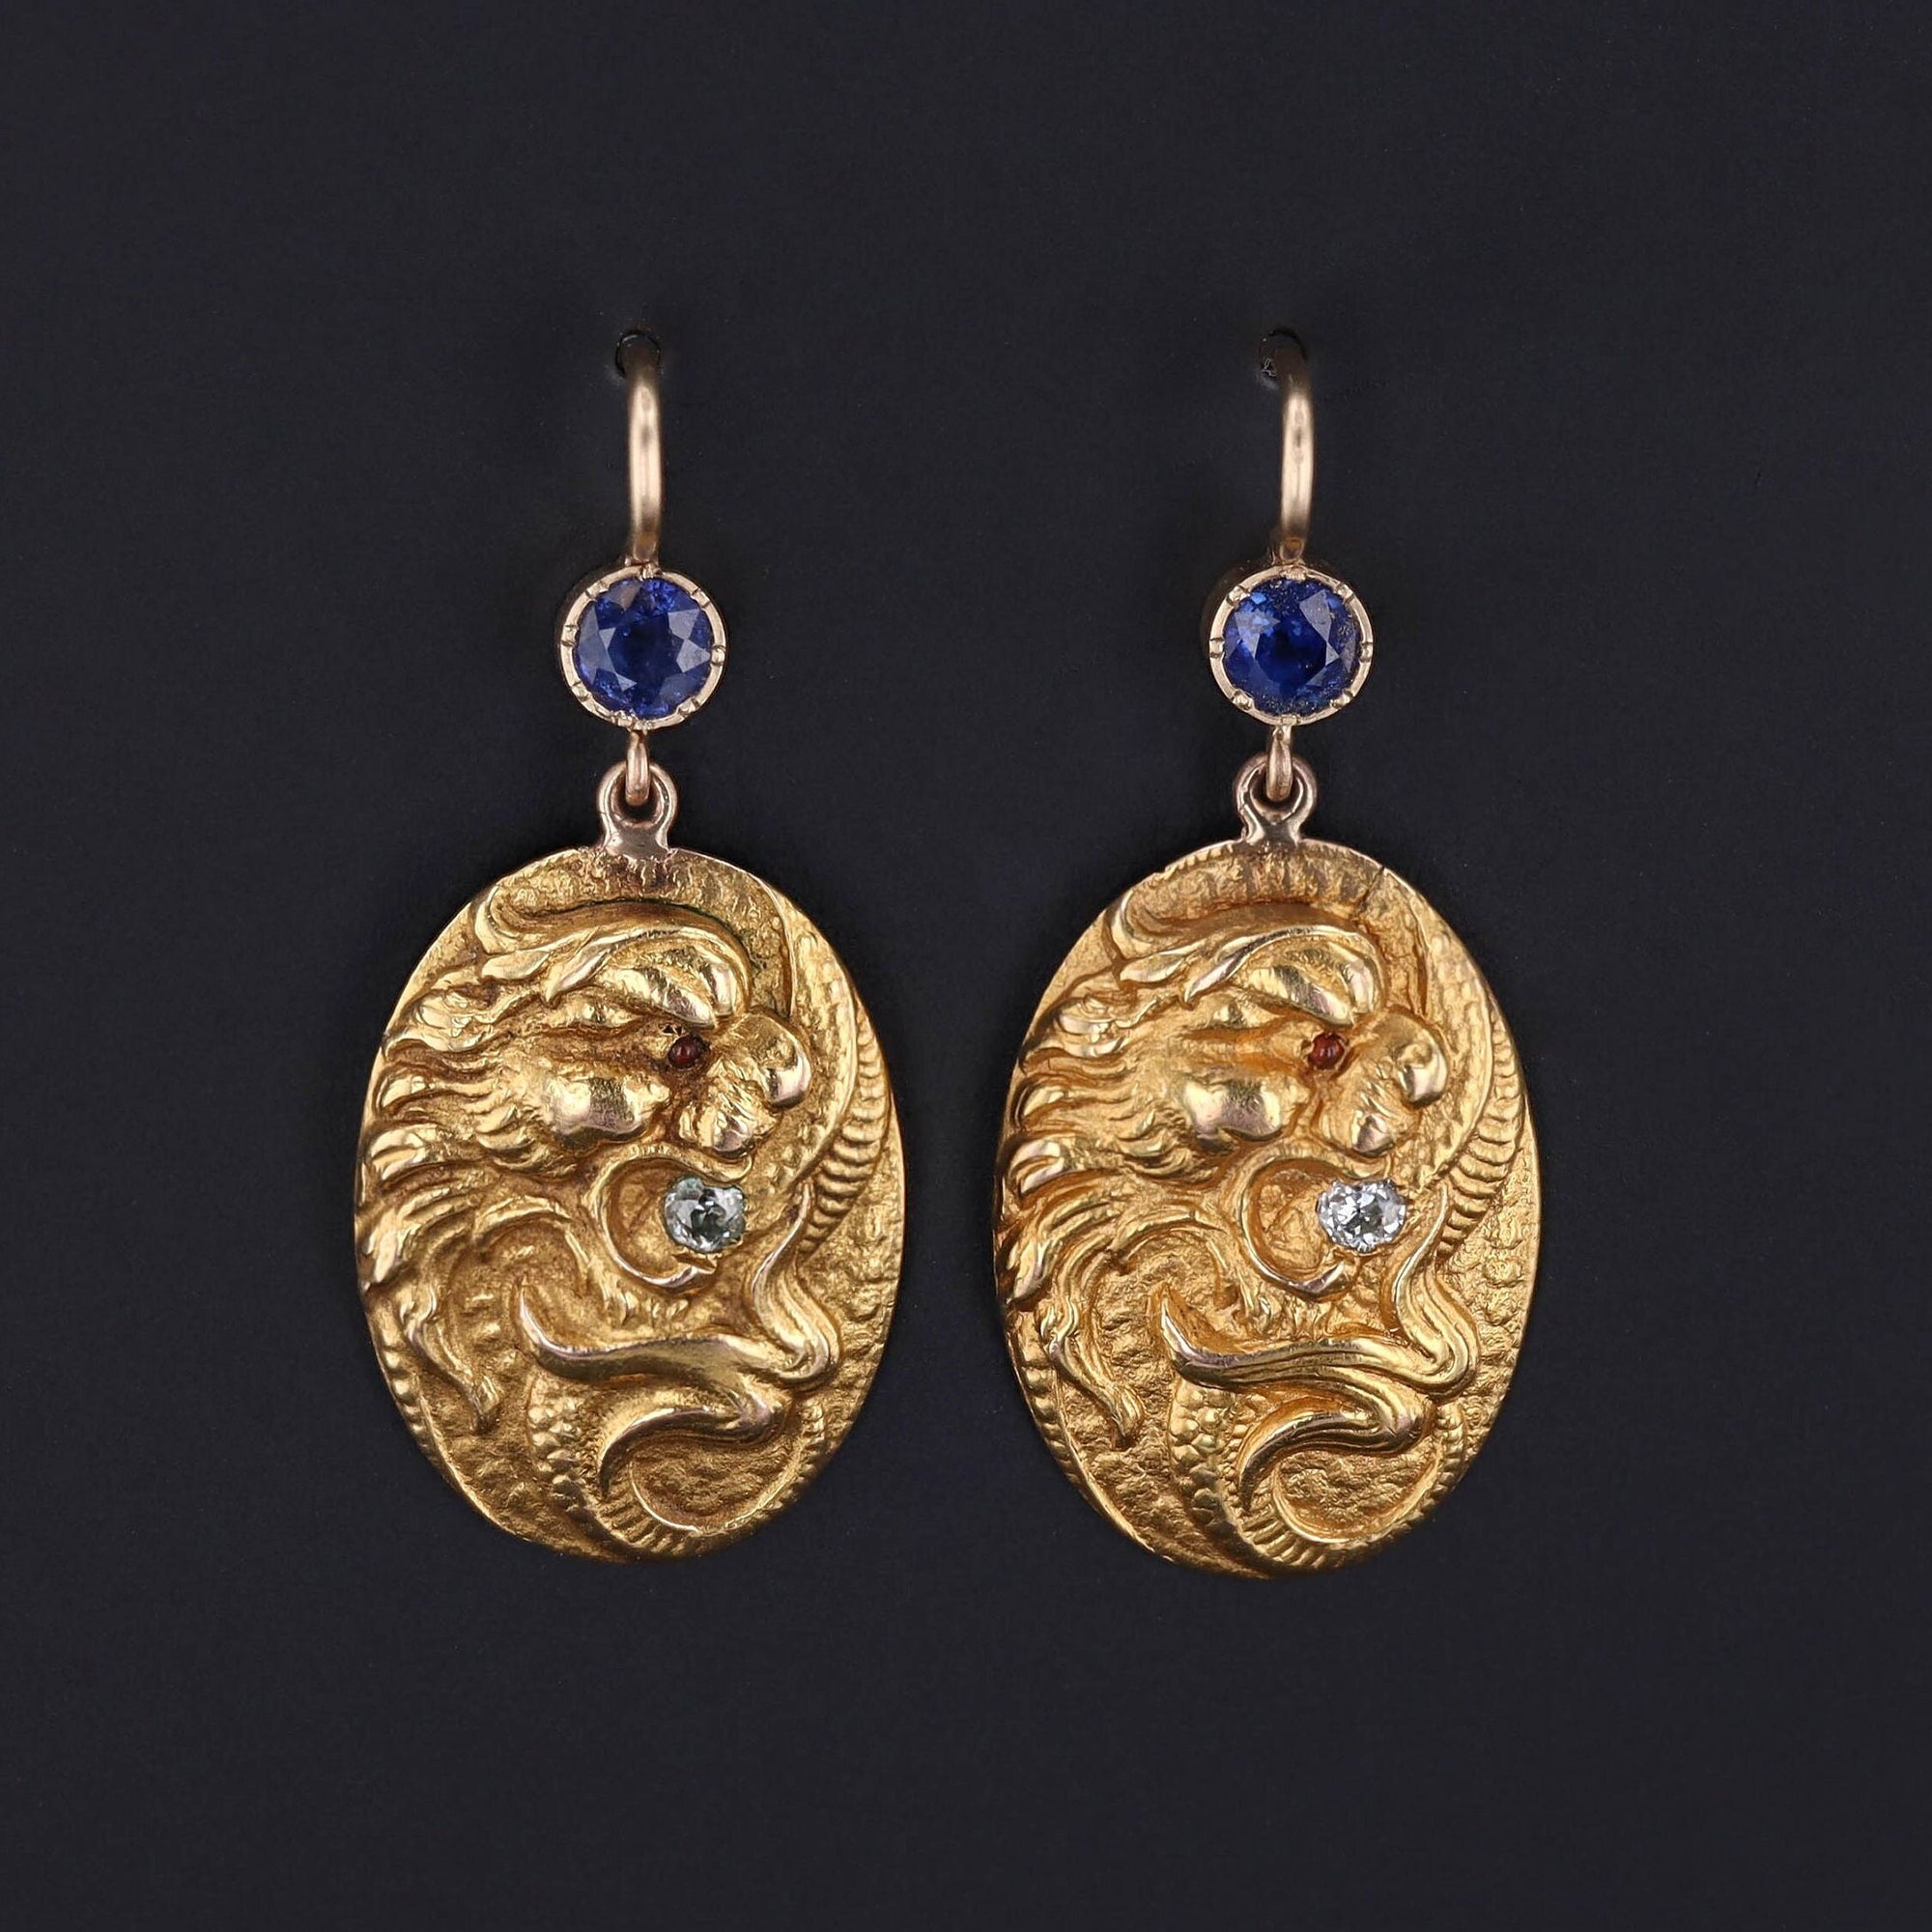 Antique 14k Gold Dragon Earrings | Art Nouveau Earrings 